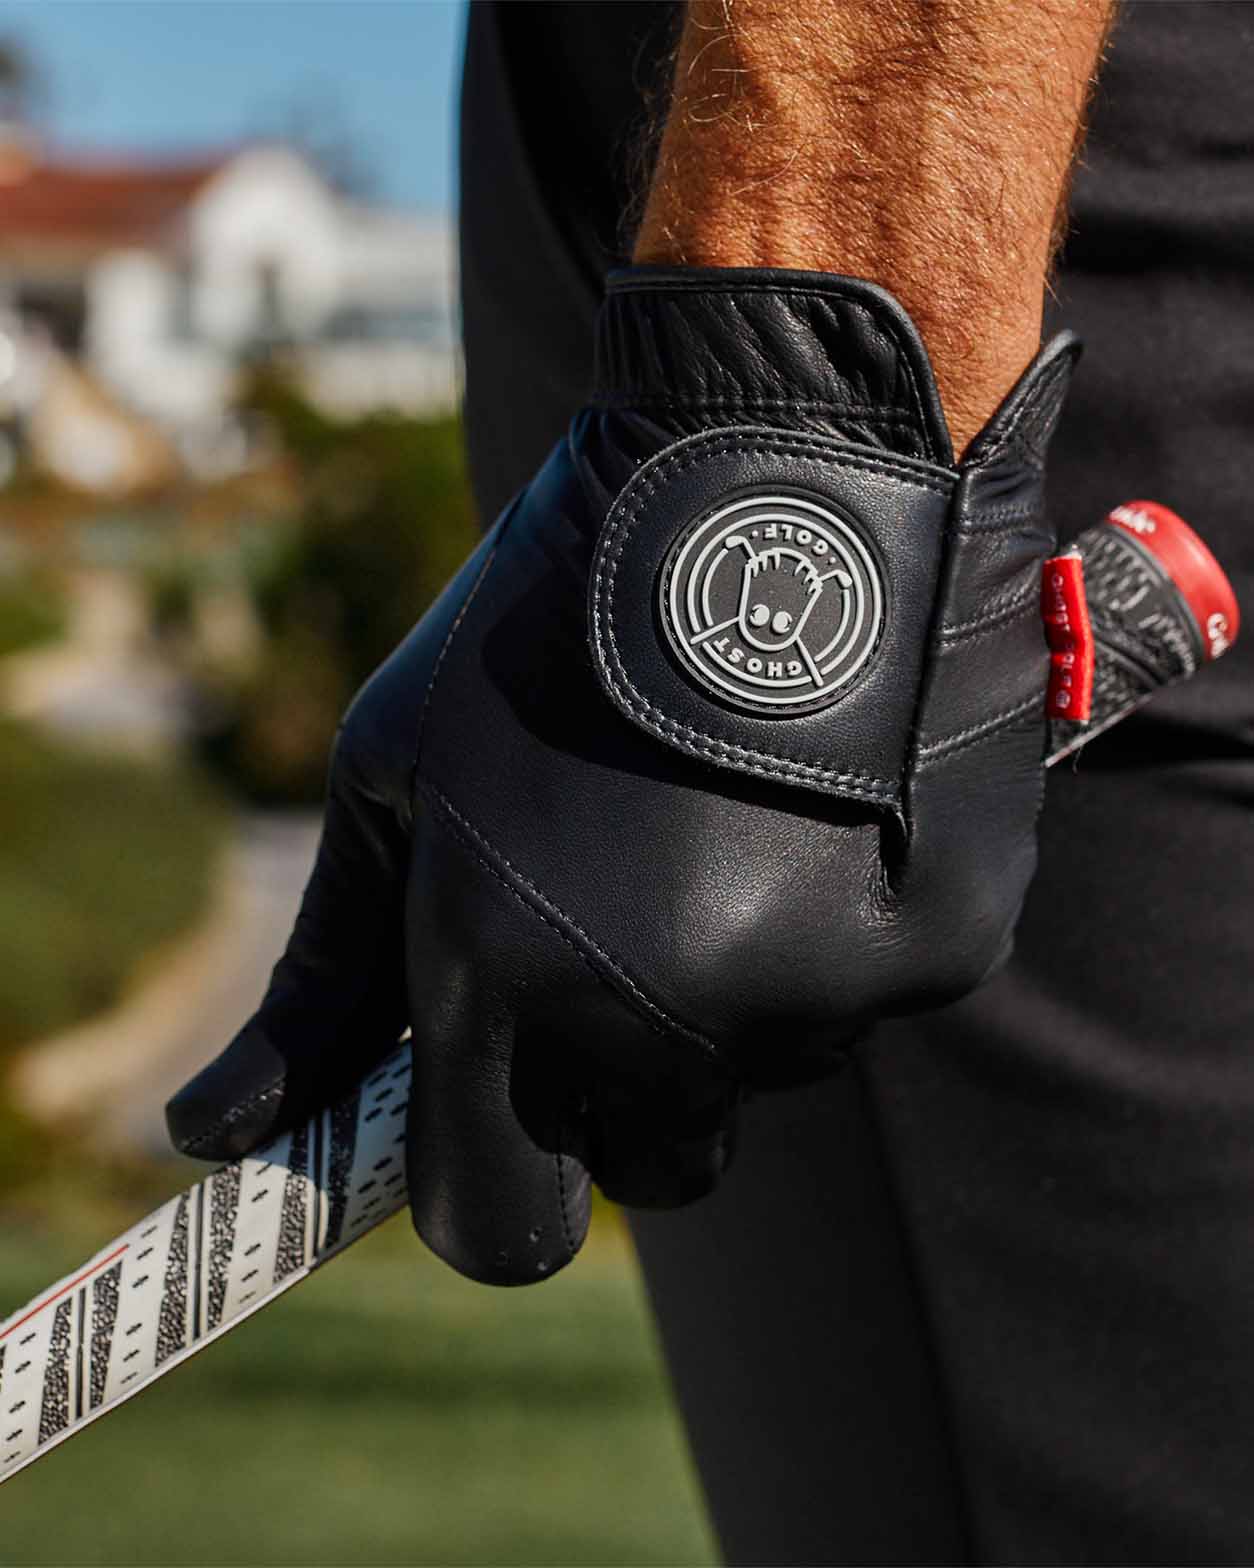 Ghost Golf Club | Black Golf Glove